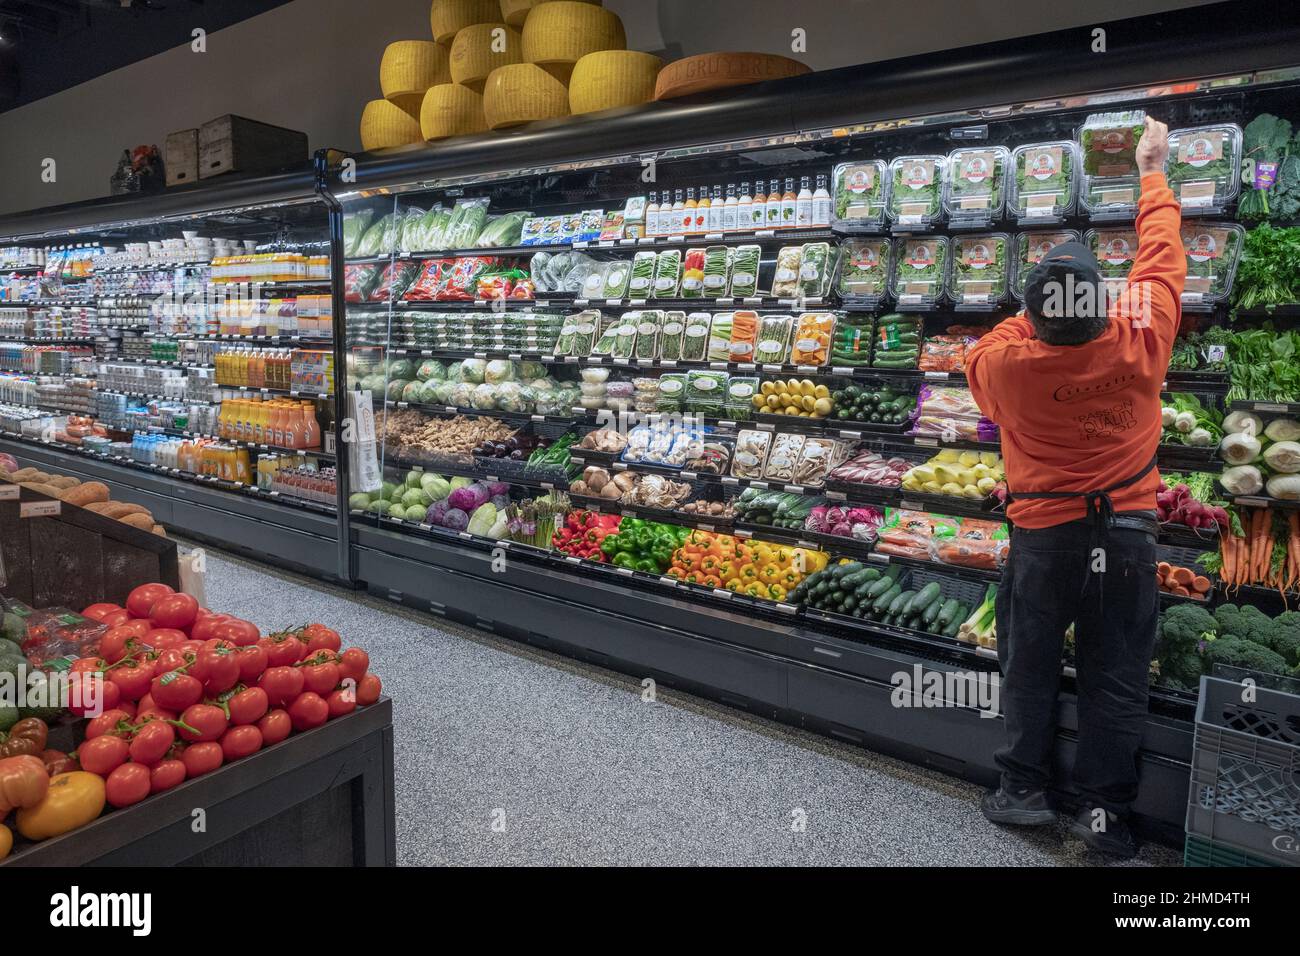 Un ouvrier réapprovisionnez les étagères de la section des légumes de Citarella's, un supermarché haut de gamme situé au 6th Avenue à Greenwich Village, New York. Banque D'Images